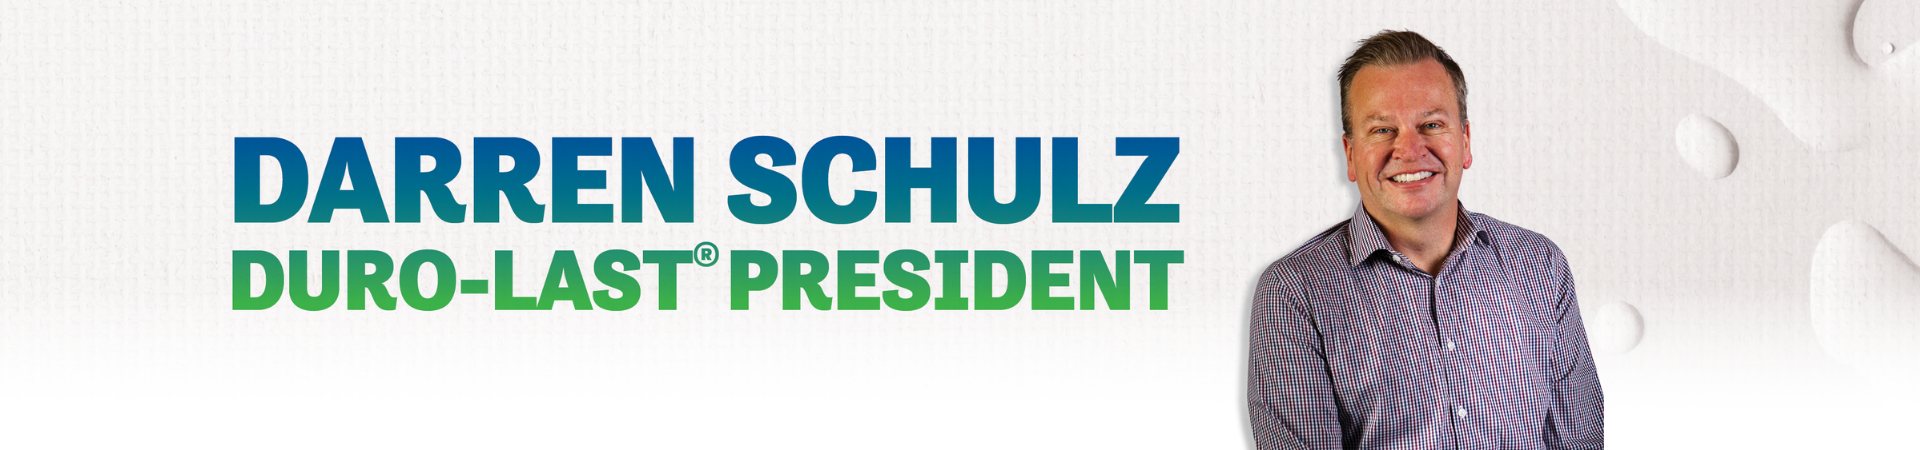 Duro-Last President Darren Schulz